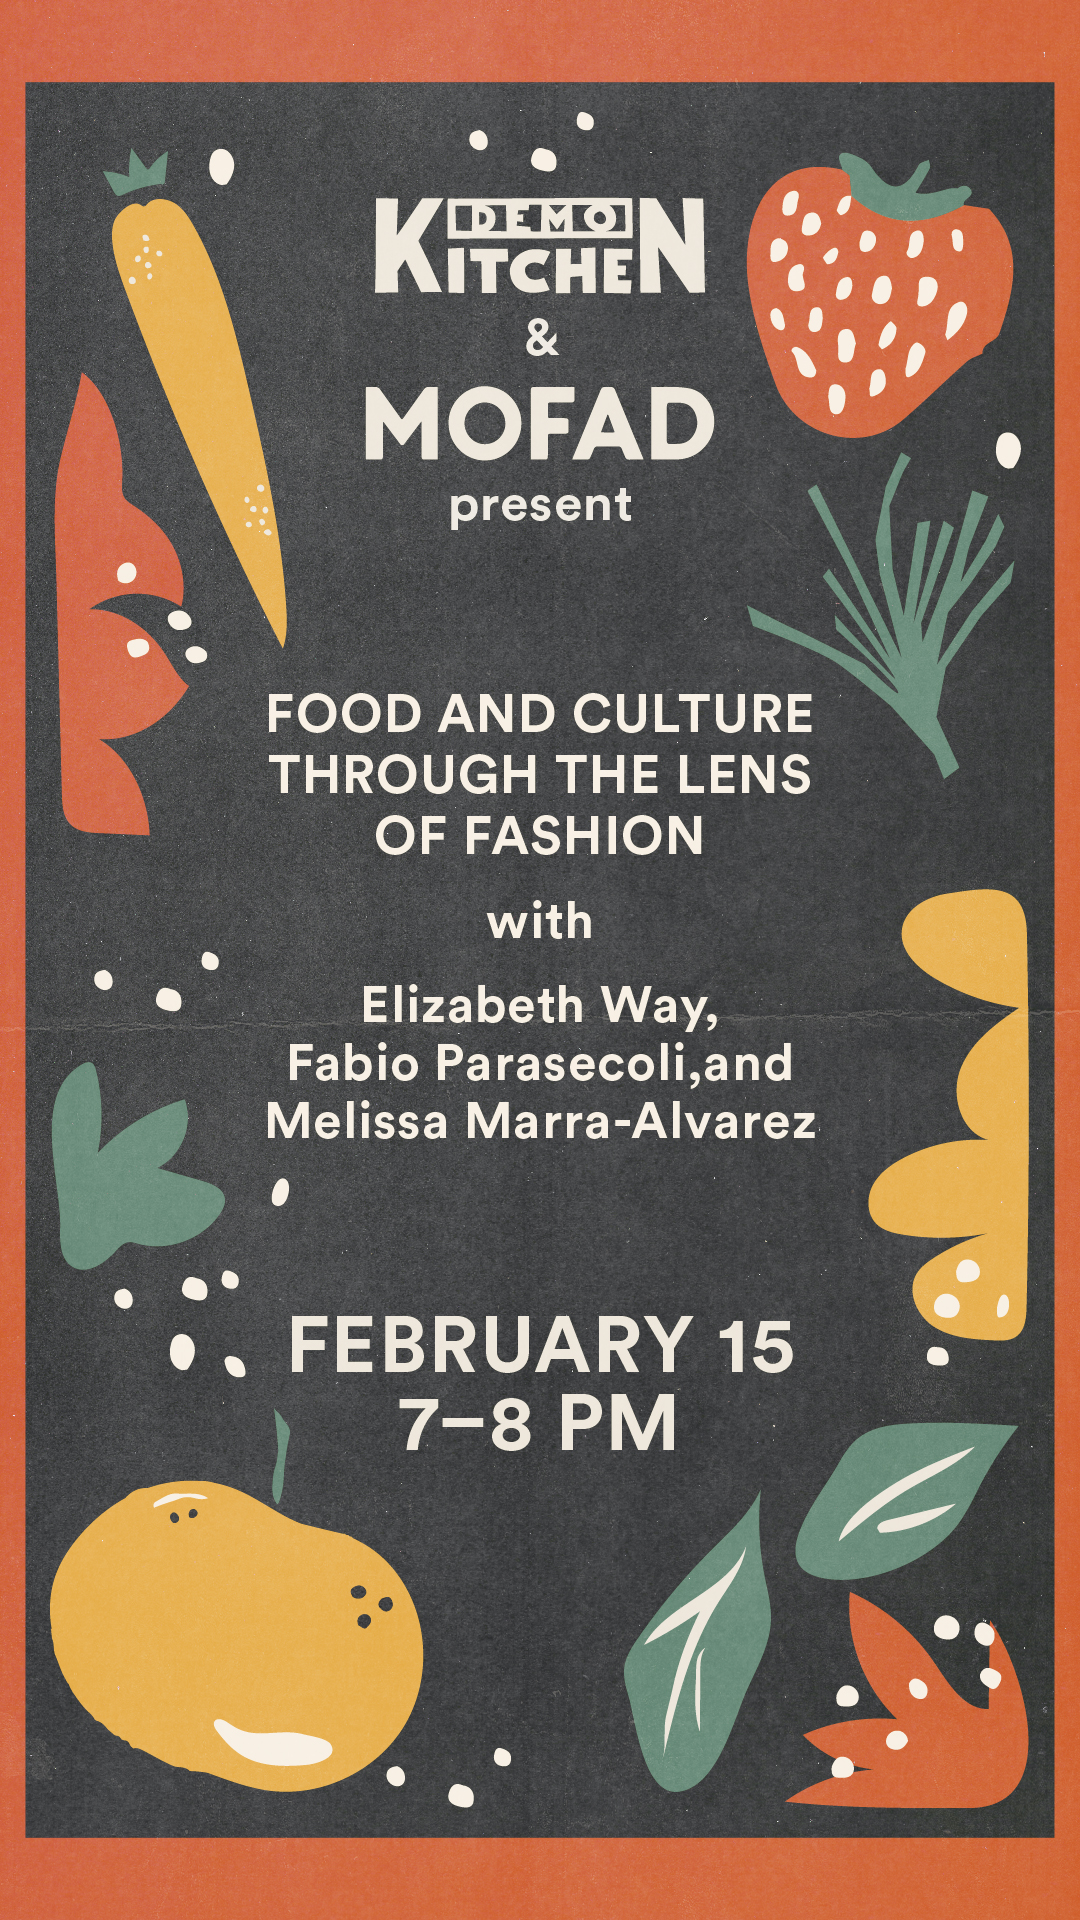 Demo Kitchen & MOFAD event promo - February 15